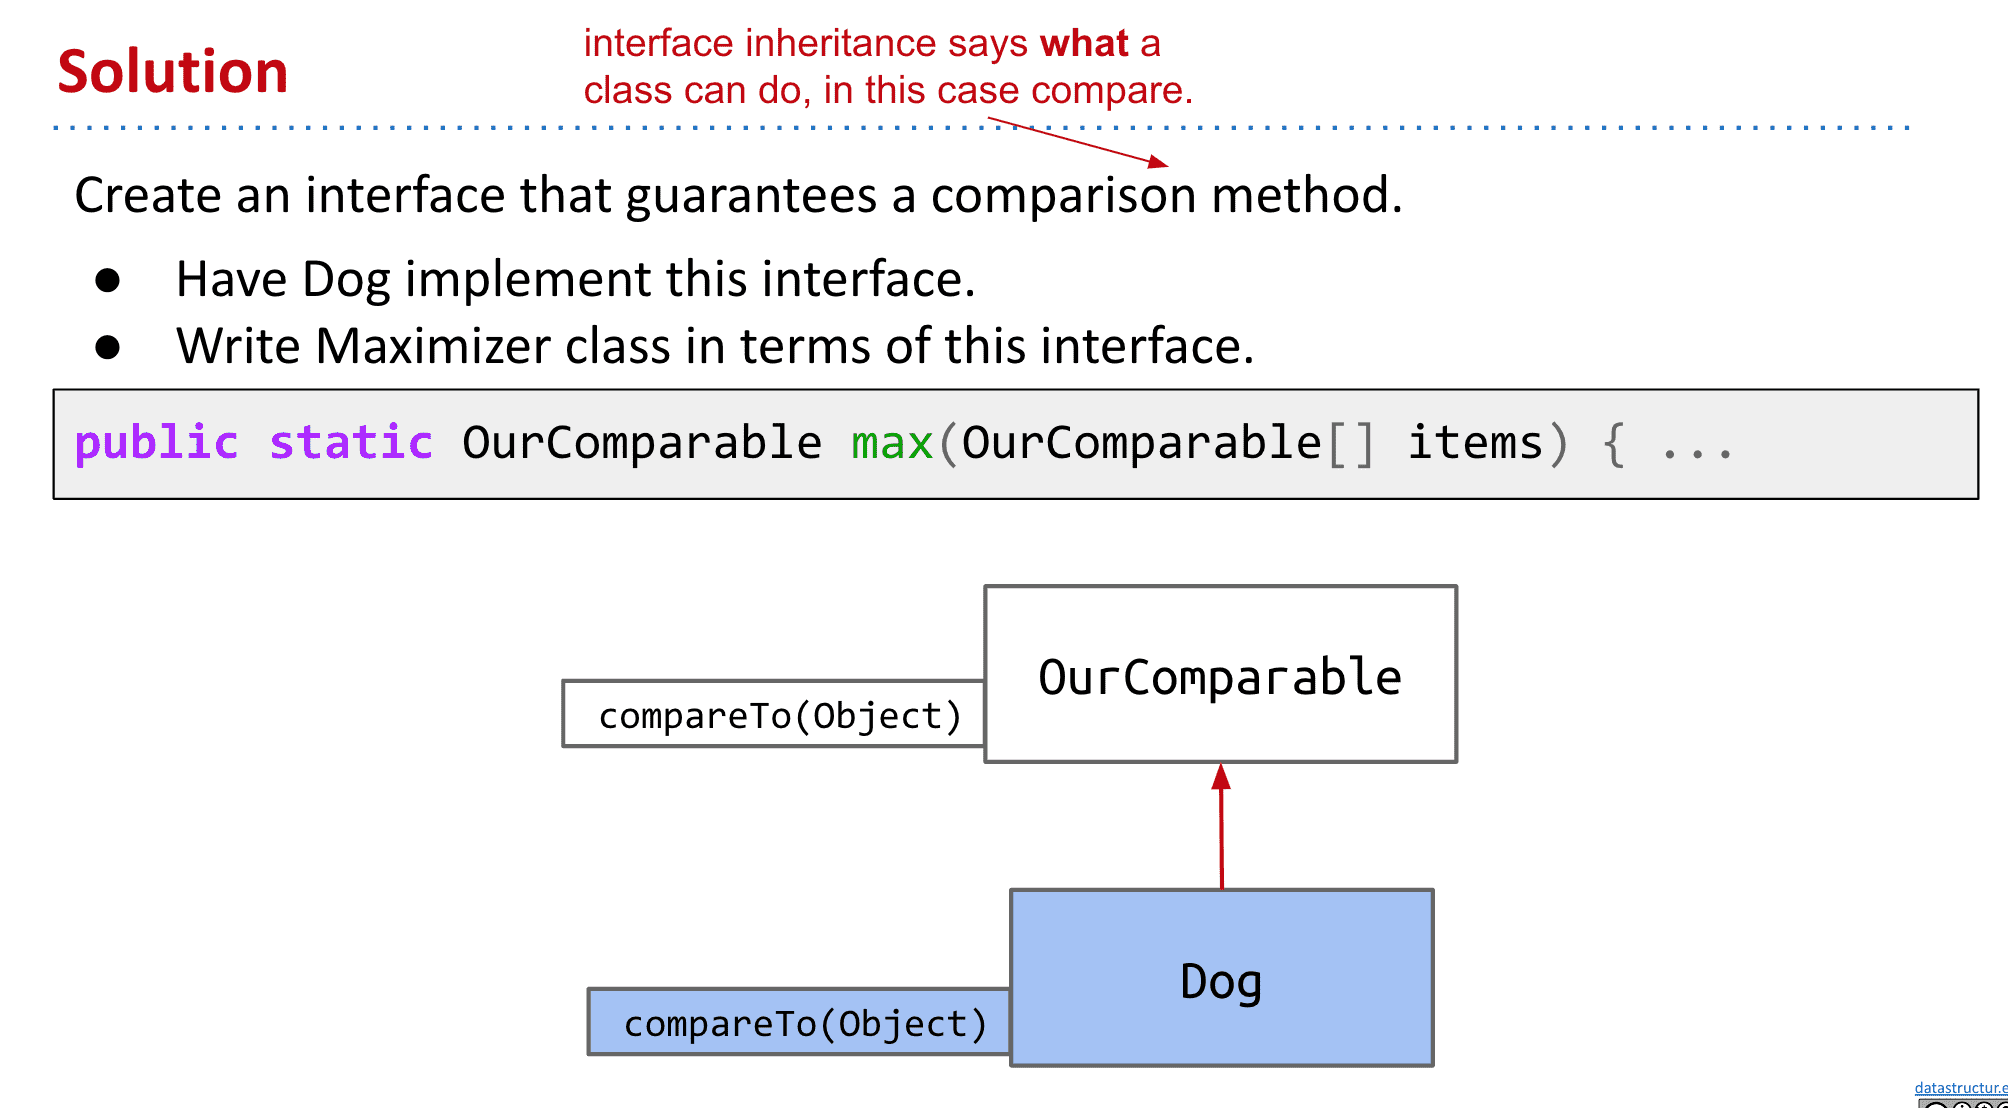 这里Dog继承了max的要求,所以保证了dog是可以进行比较的并且这里的dog就表现了出了子类多态性